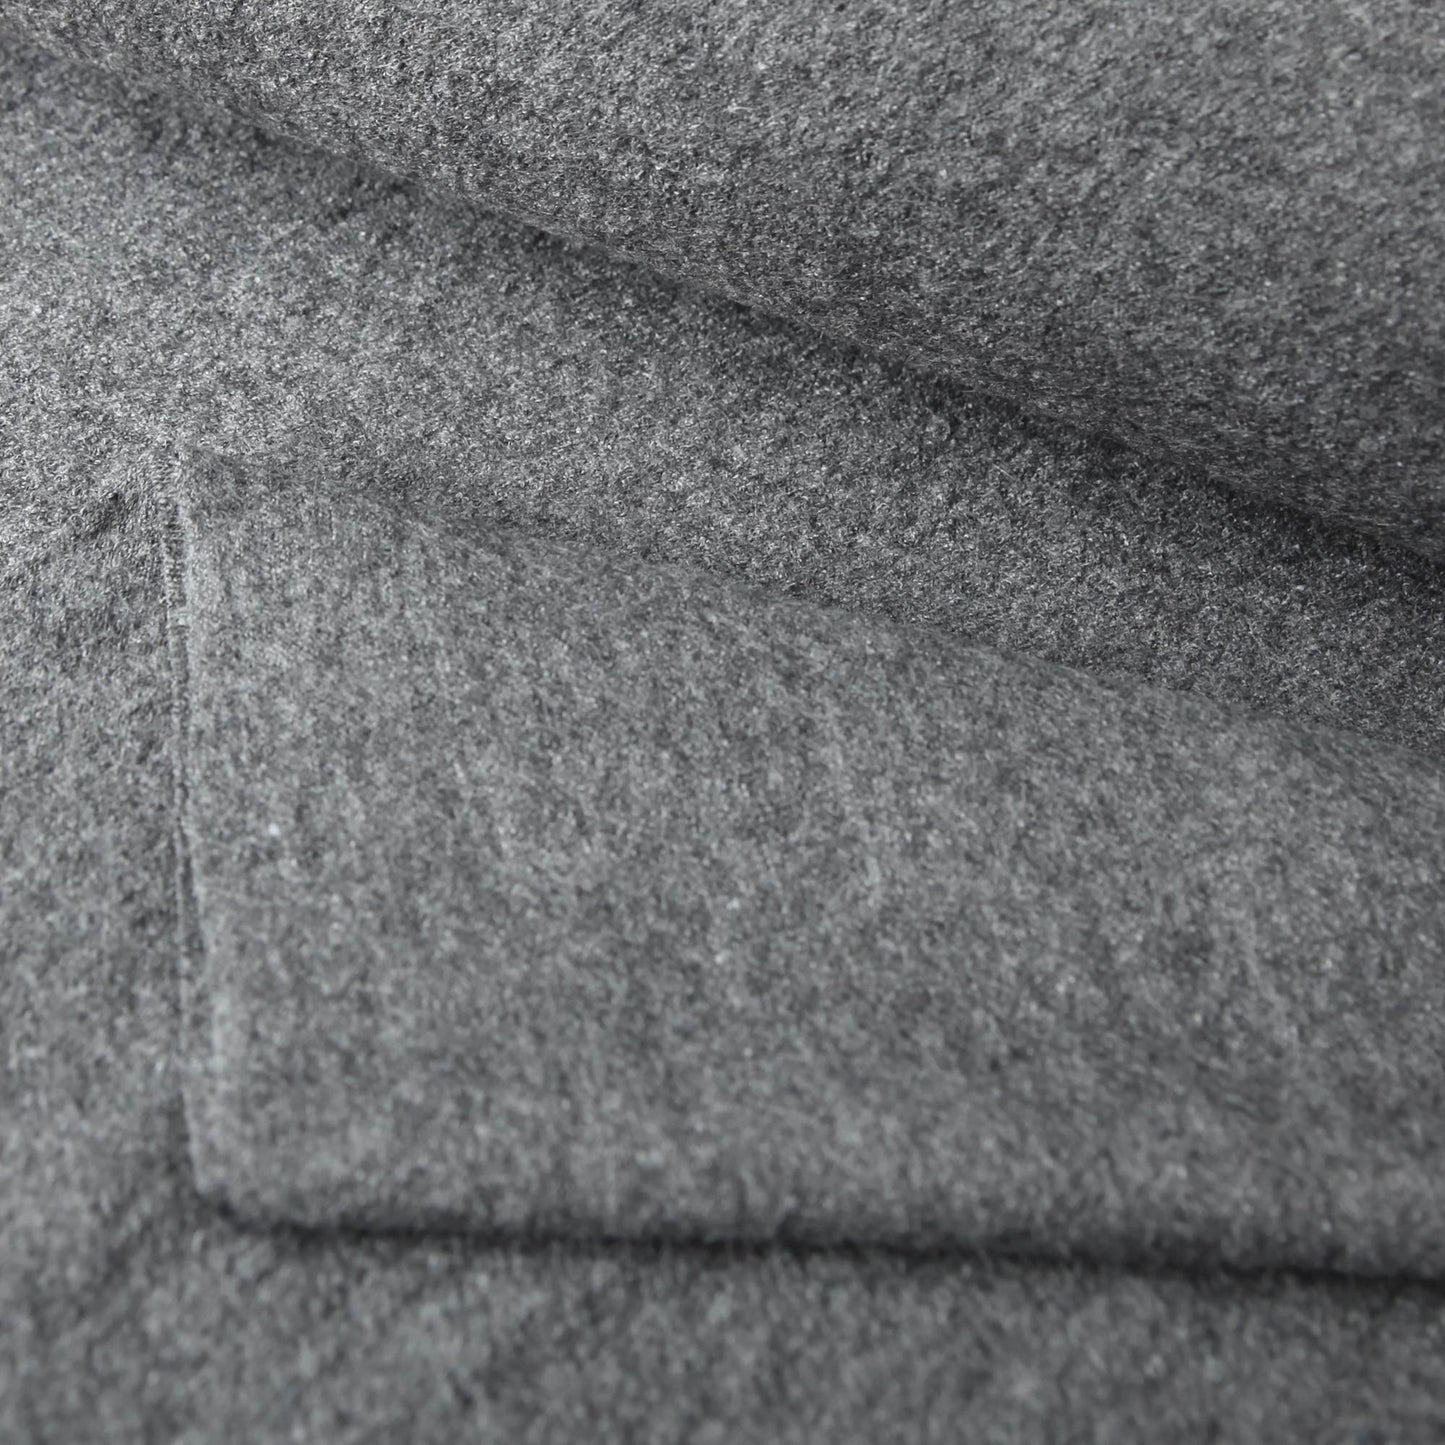 Wollmischgewebe - Walkstoff Viskose mit Wolle in der Farbe grau melangWollstoffeStoffe KudellinoStoffe Kudellino